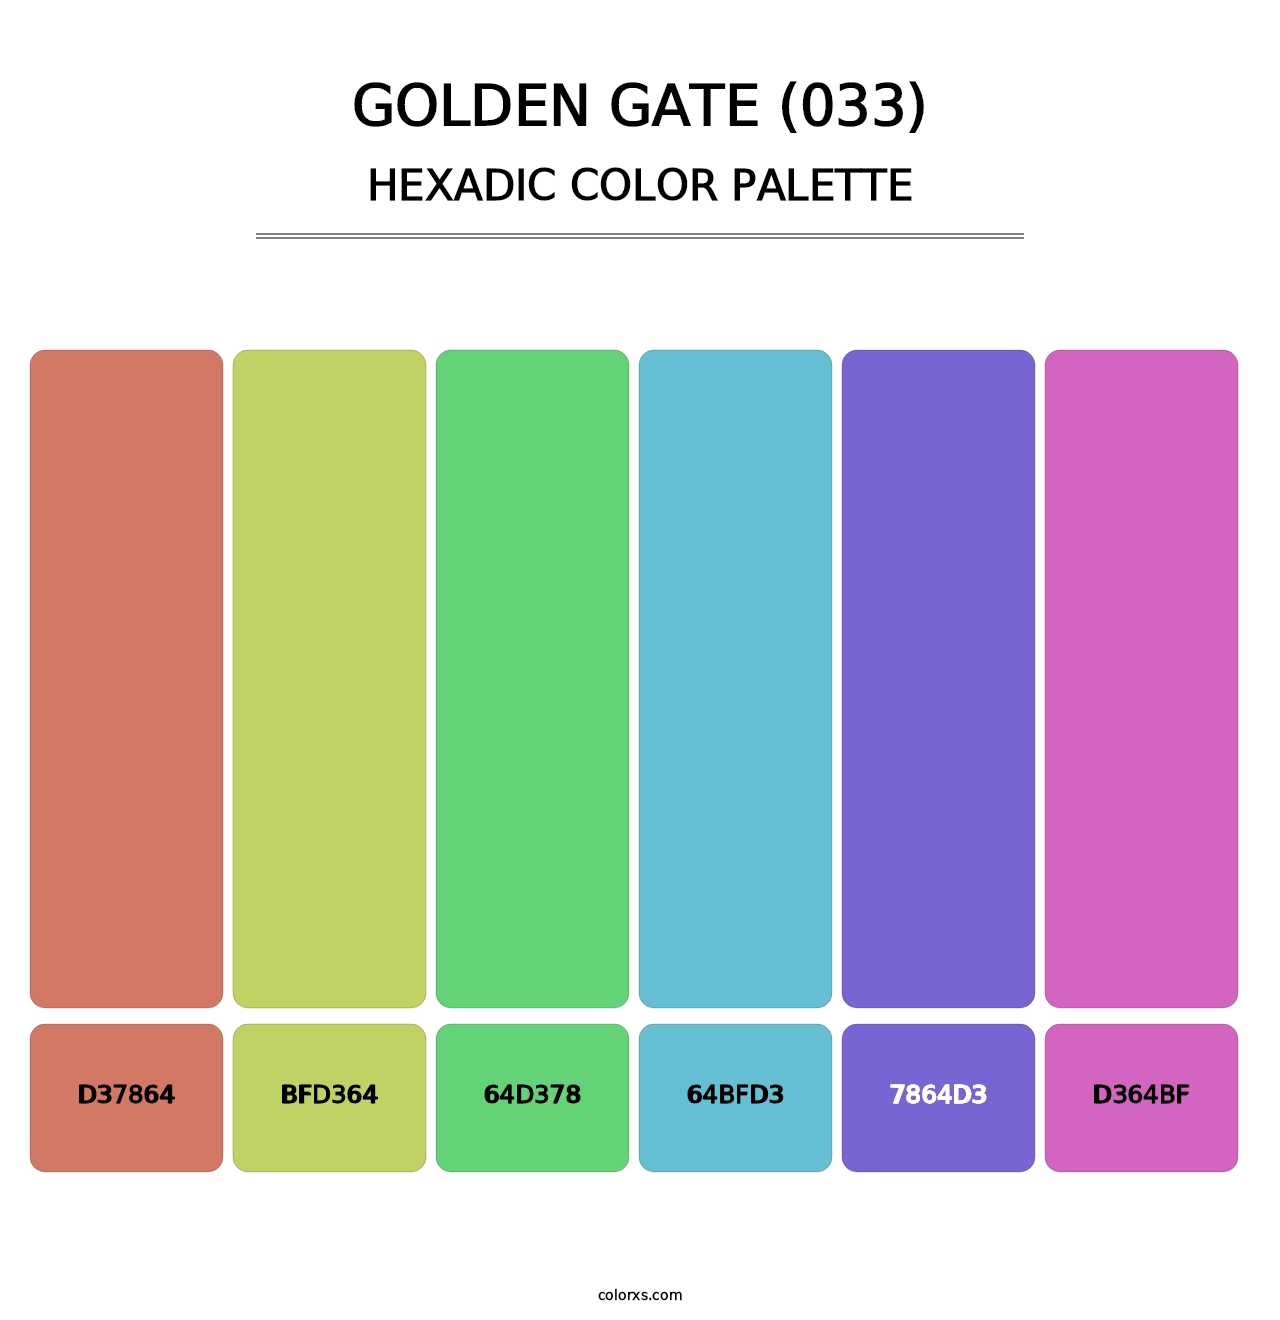 Golden Gate (033) - Hexadic Color Palette